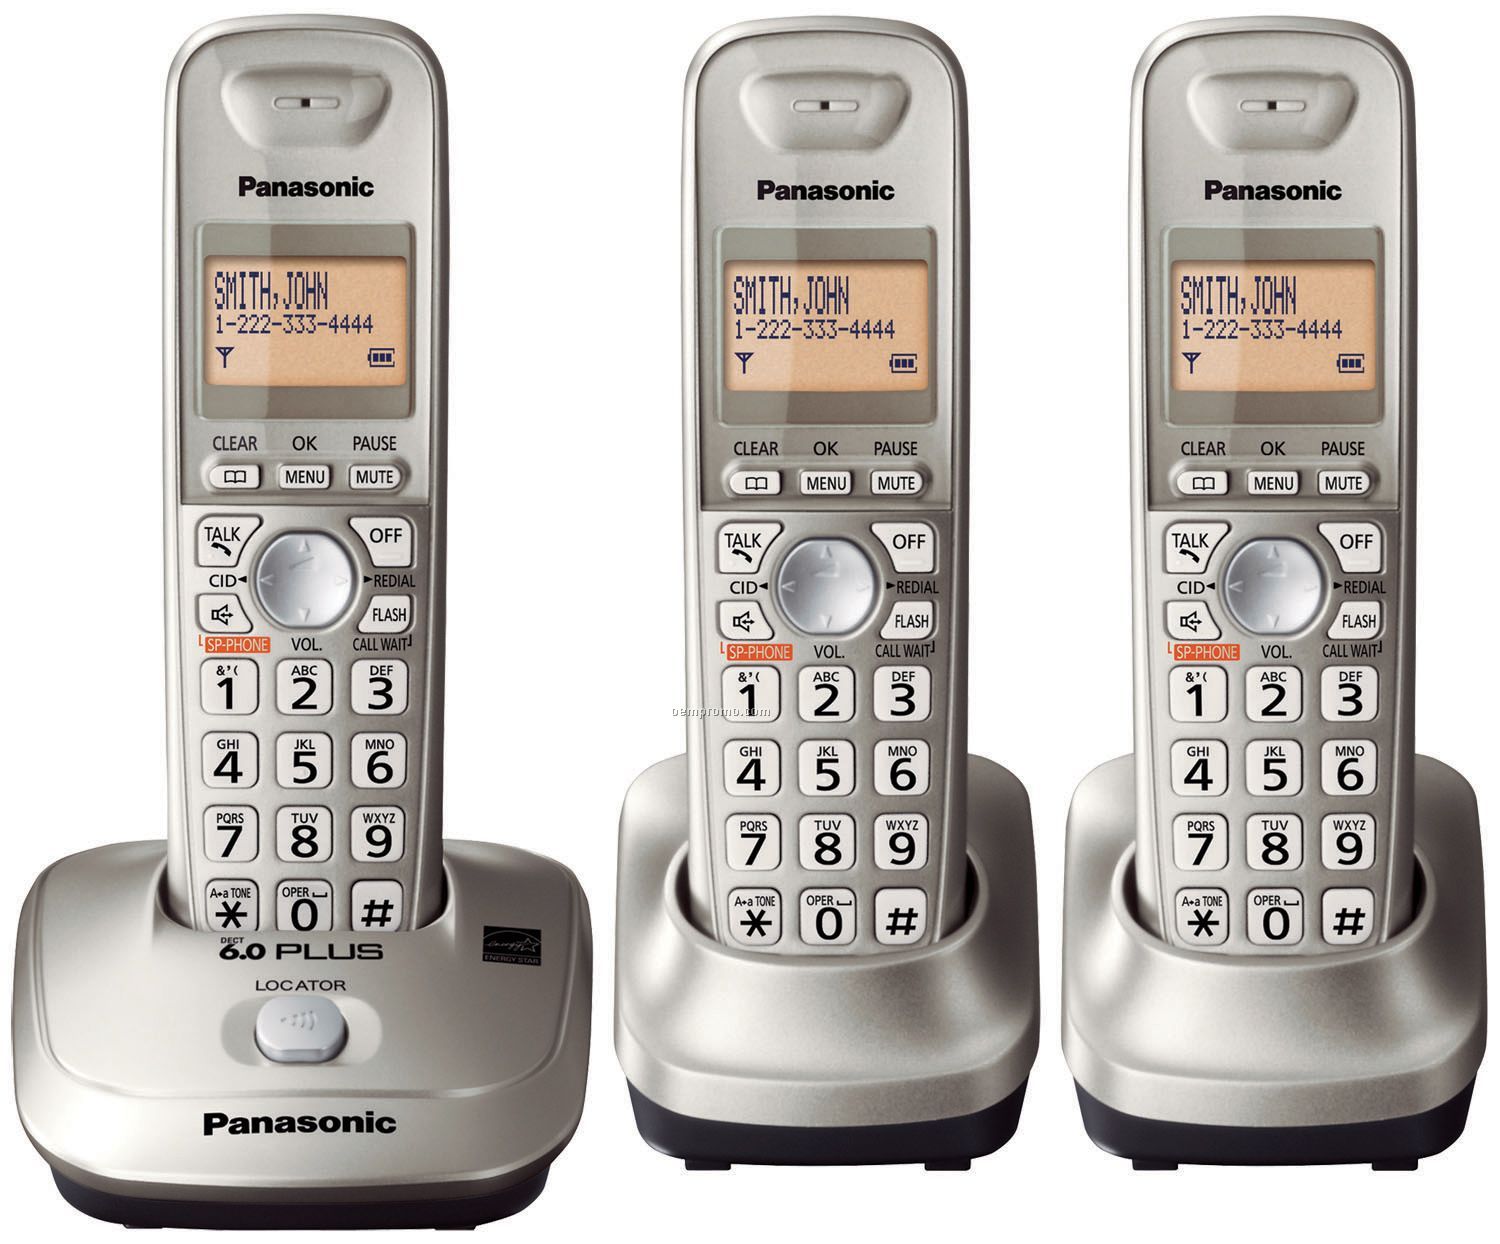 Panasonic Dect 6.0 Plus Expandable Digital Cordless Phone W/3 Handsets